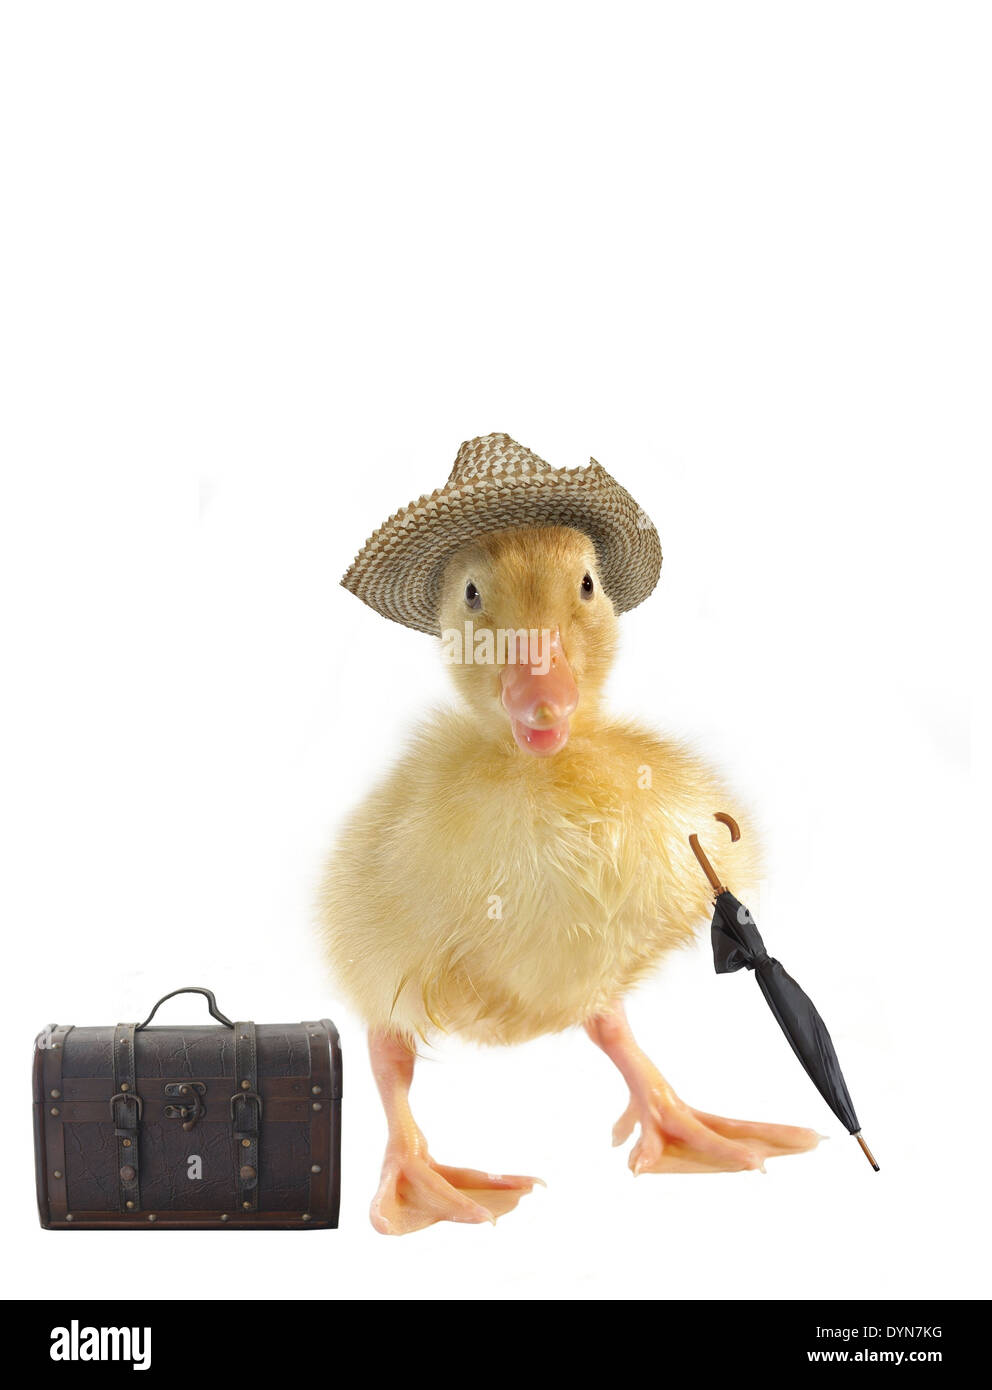 Duck with hat Banque d'images détourées - Alamy